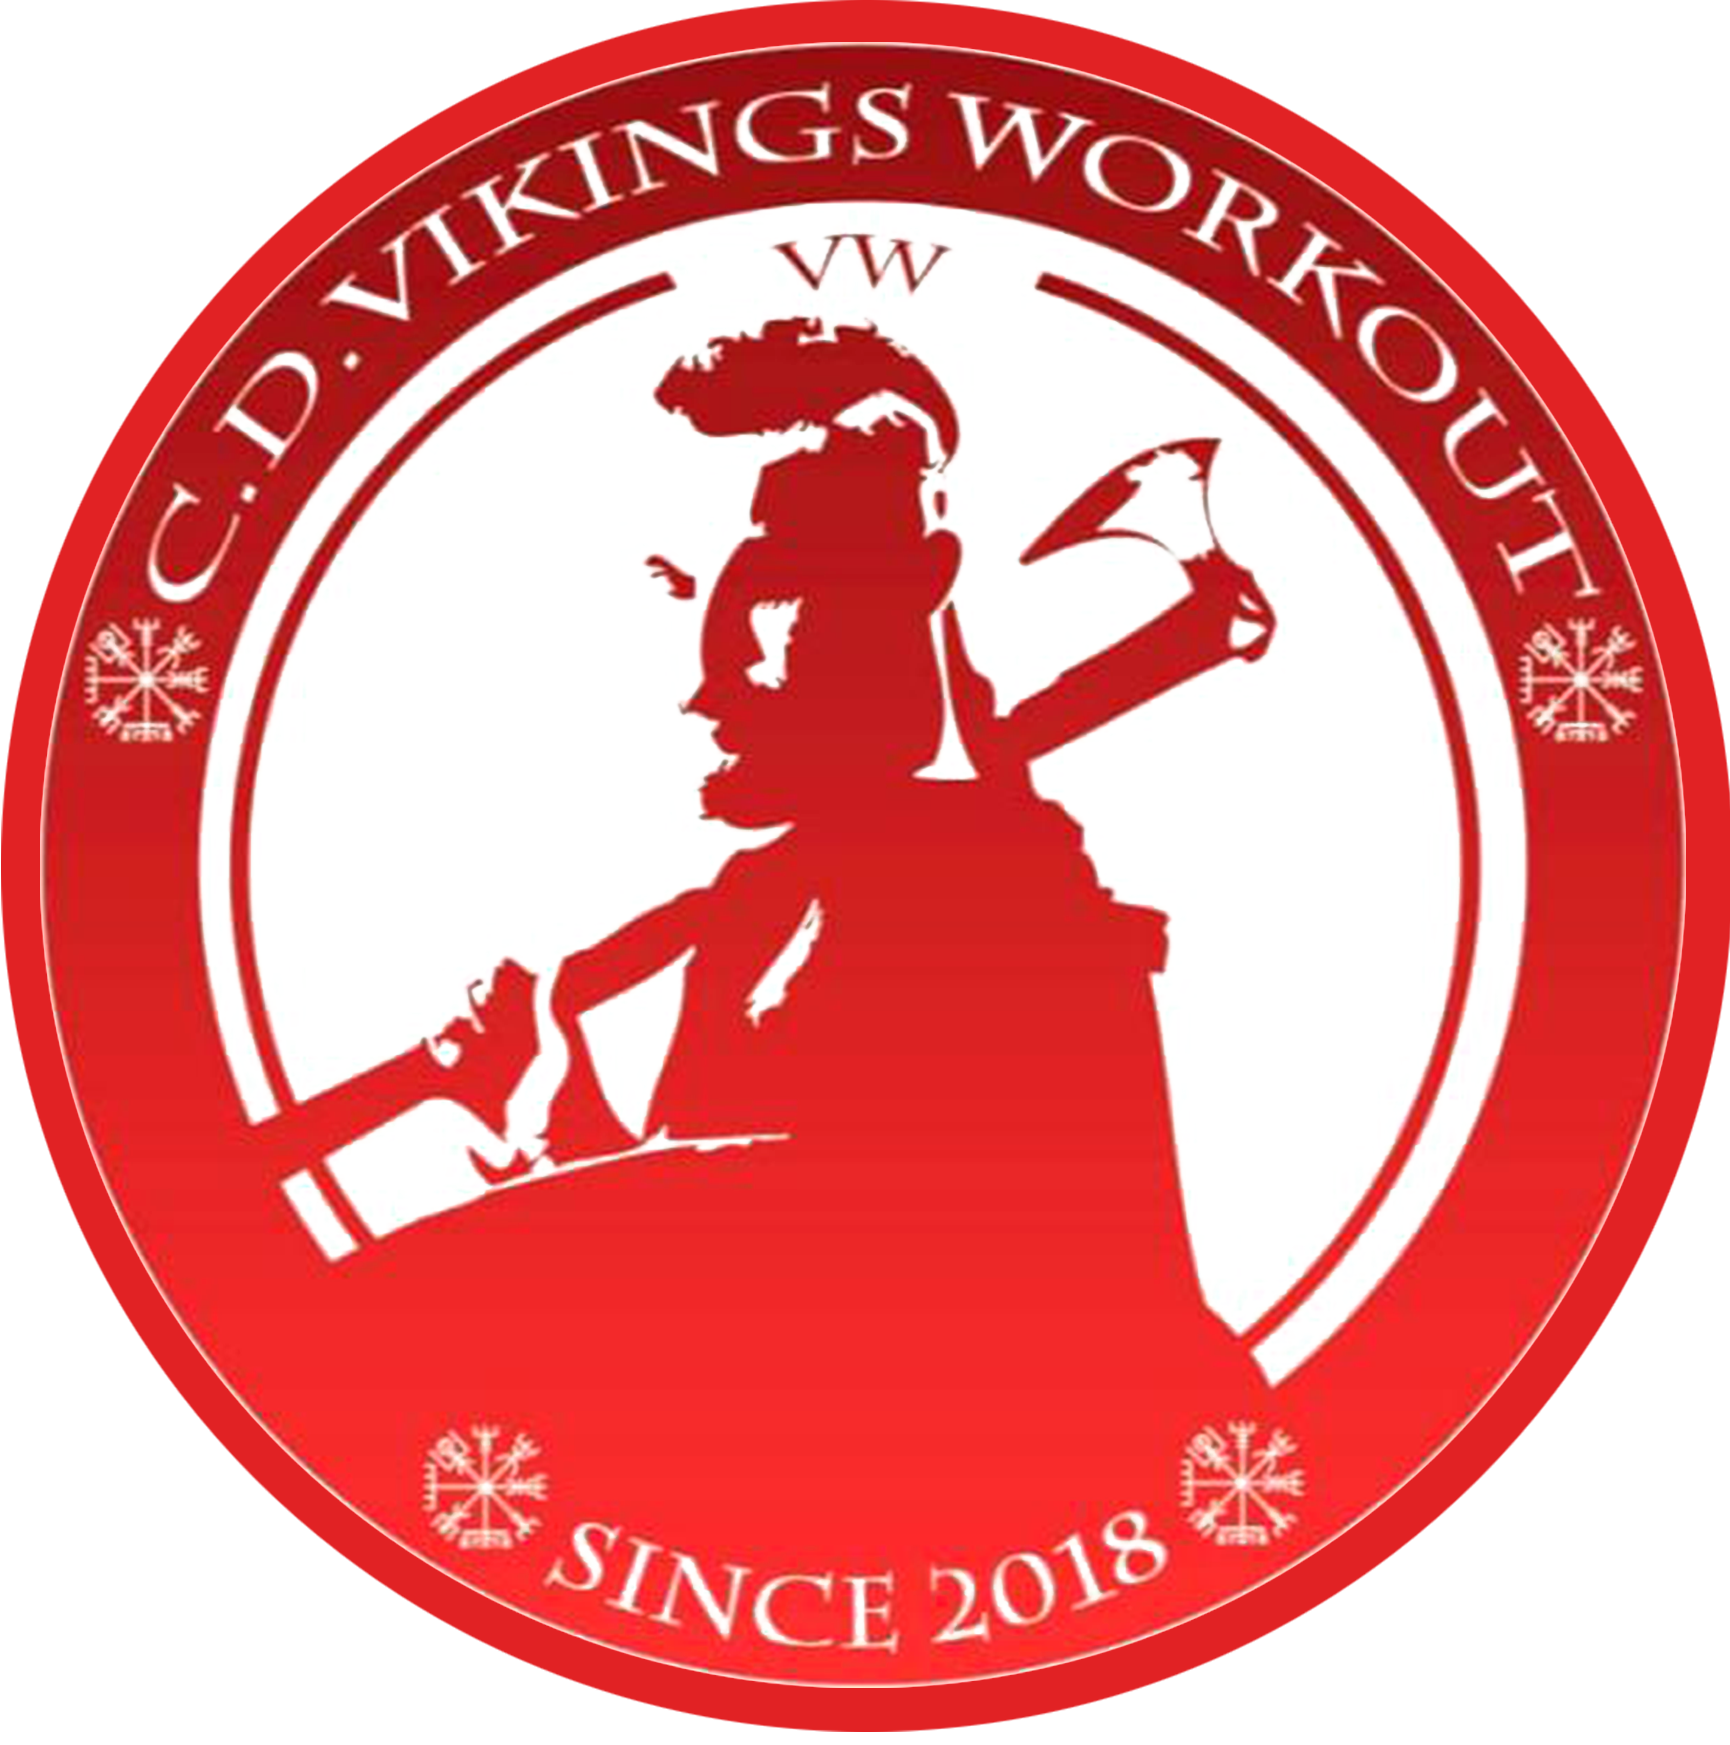 Vikings Workout Logo